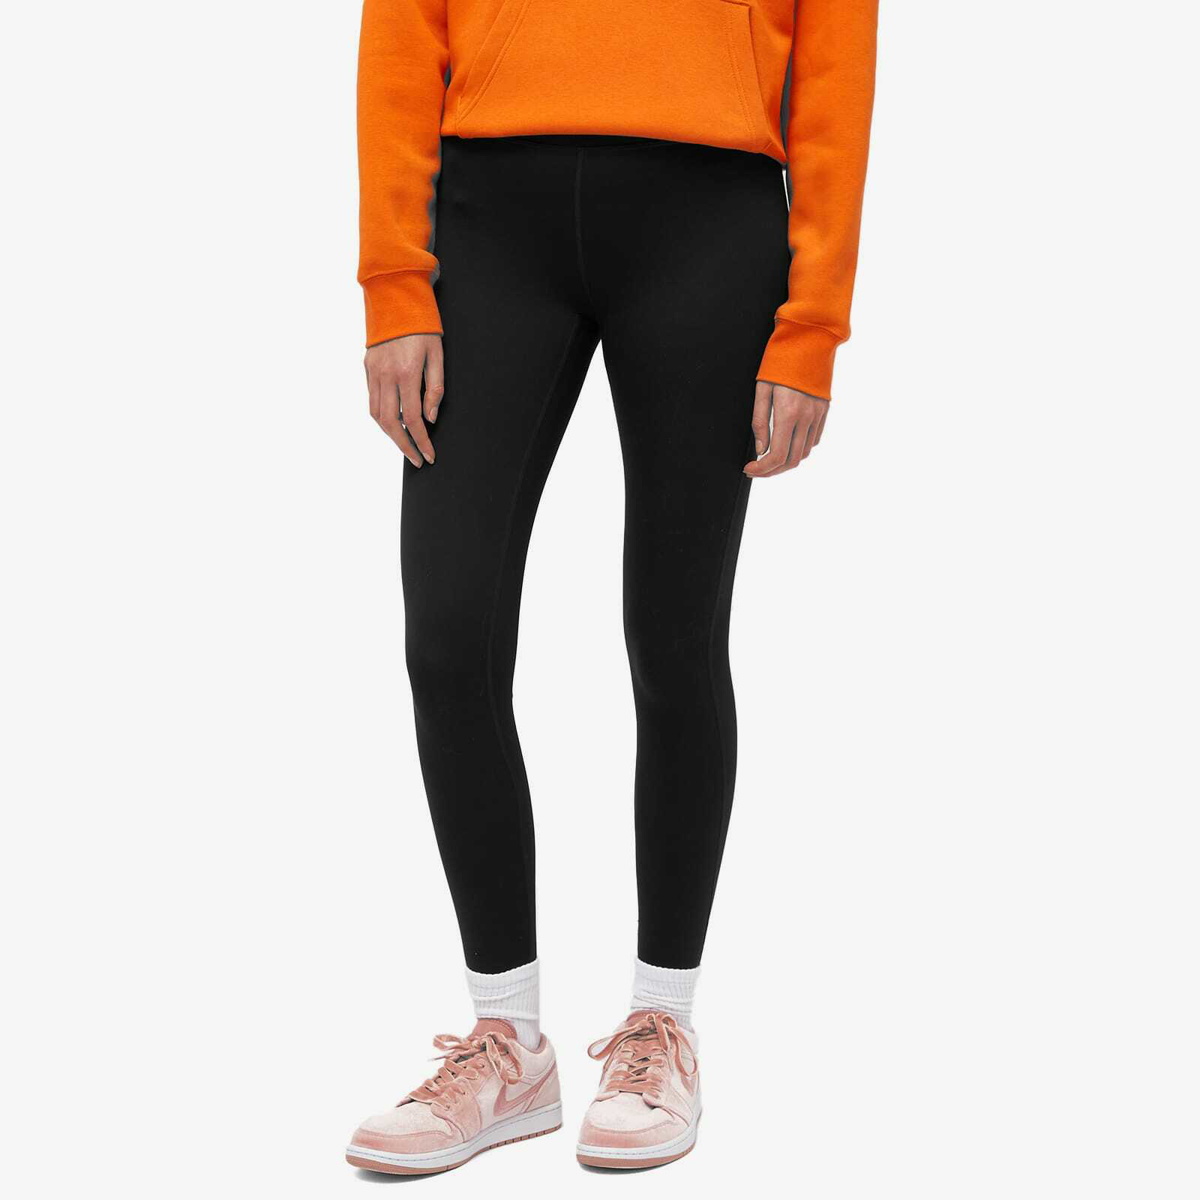 Air Jordan Women's Jumpman Core Leggings in College Grey/Summit White Nike  Jordan Brand